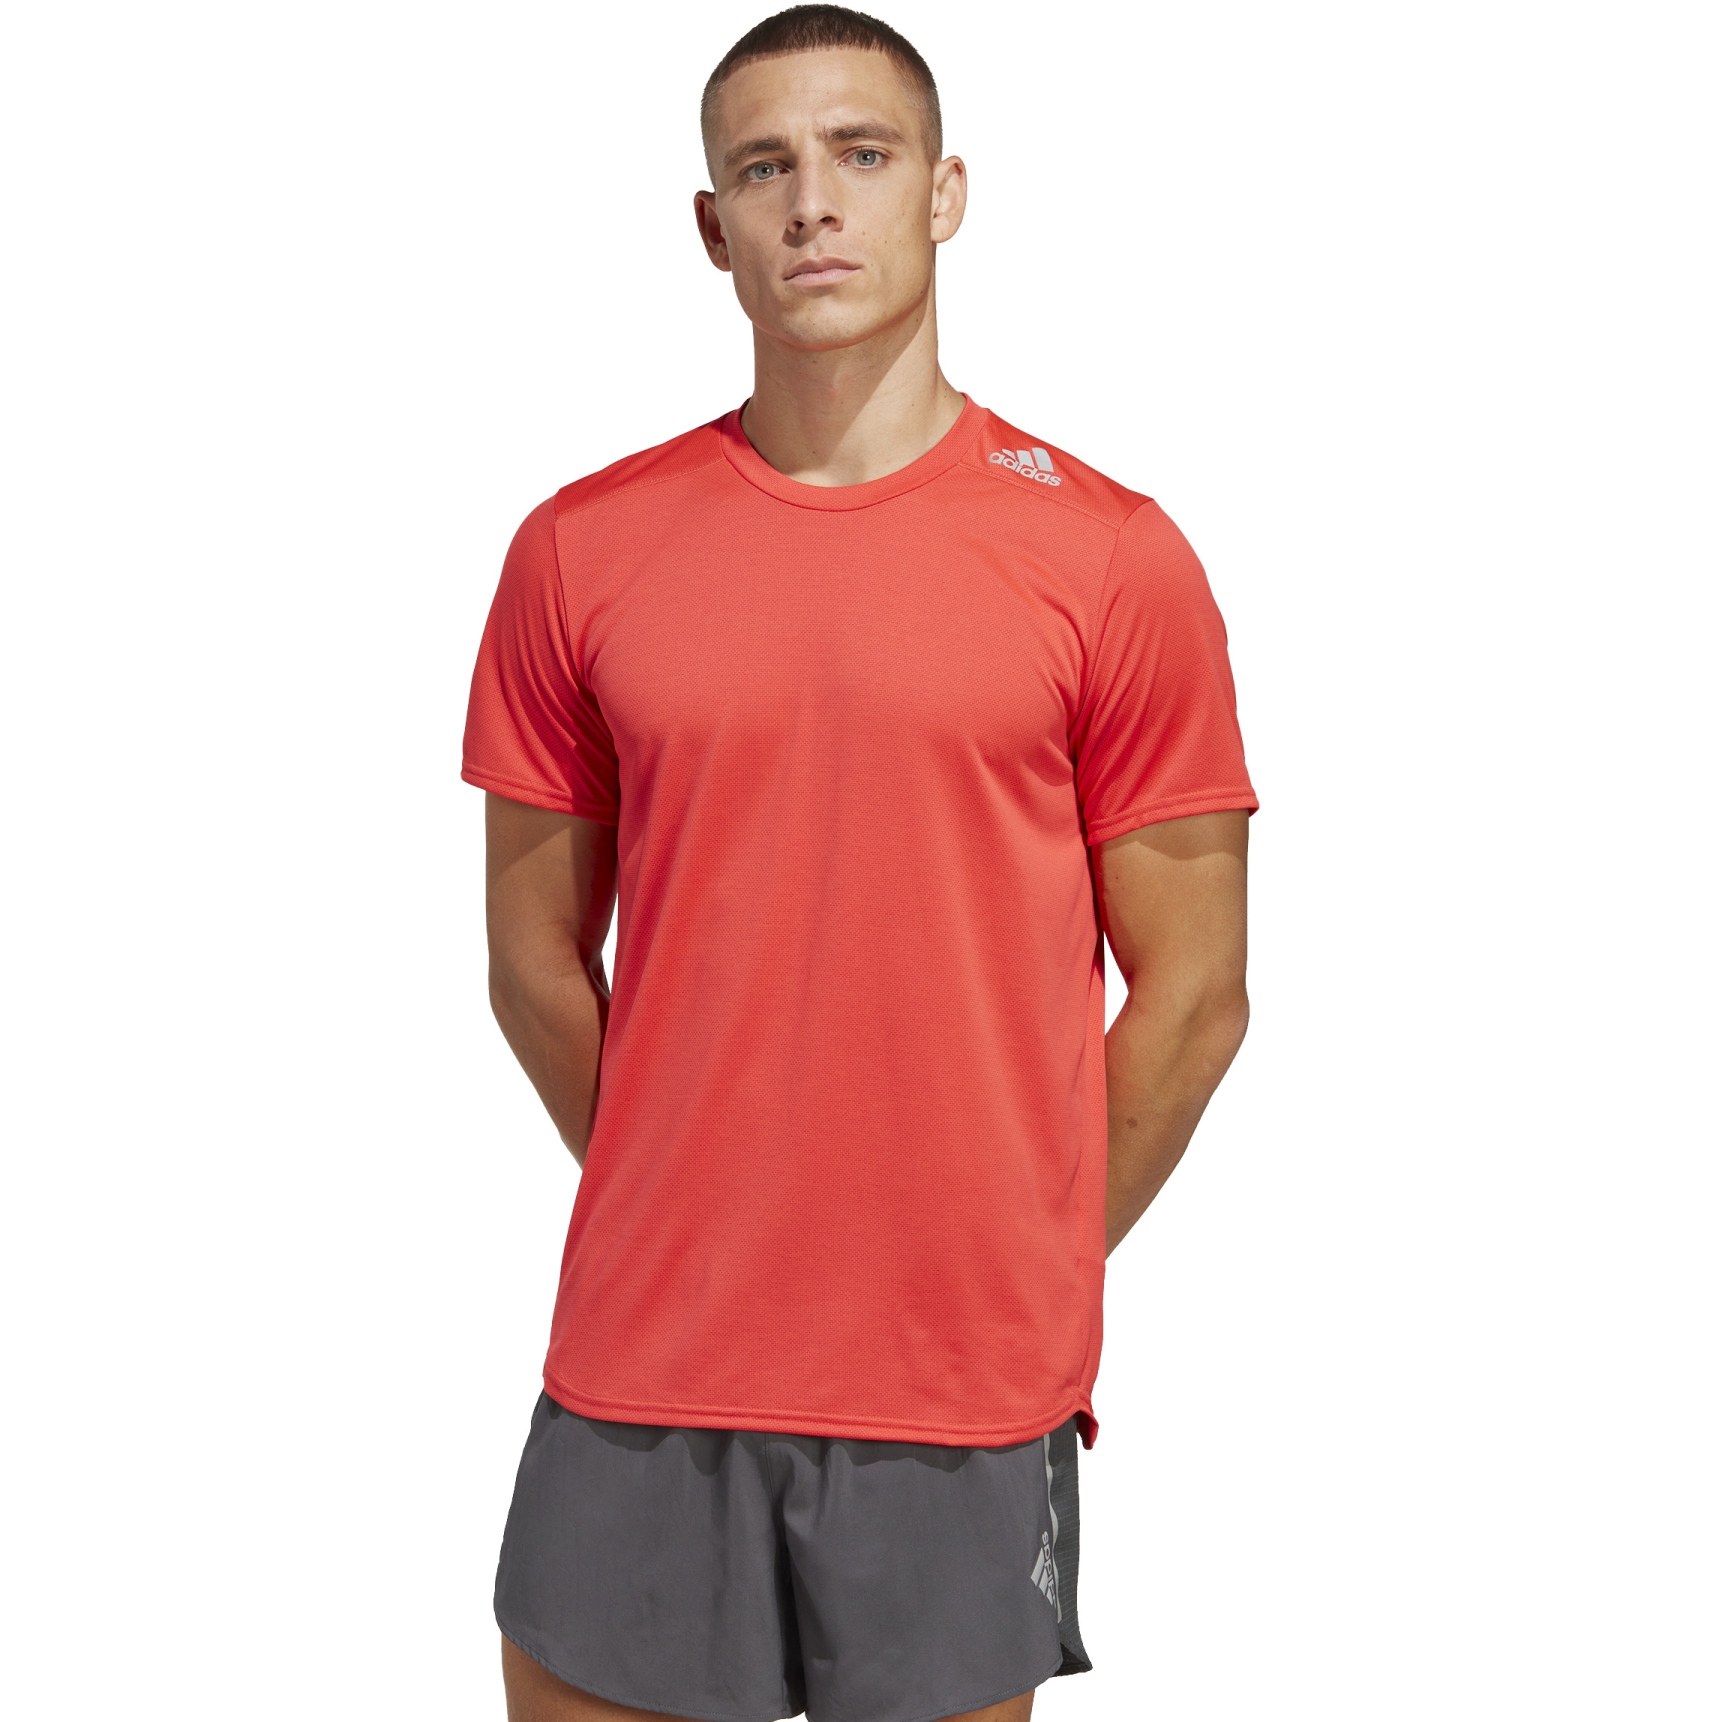 Produktbild von adidas TERREX Designed 4 Running T-Shirt Herren - bright red IB8940